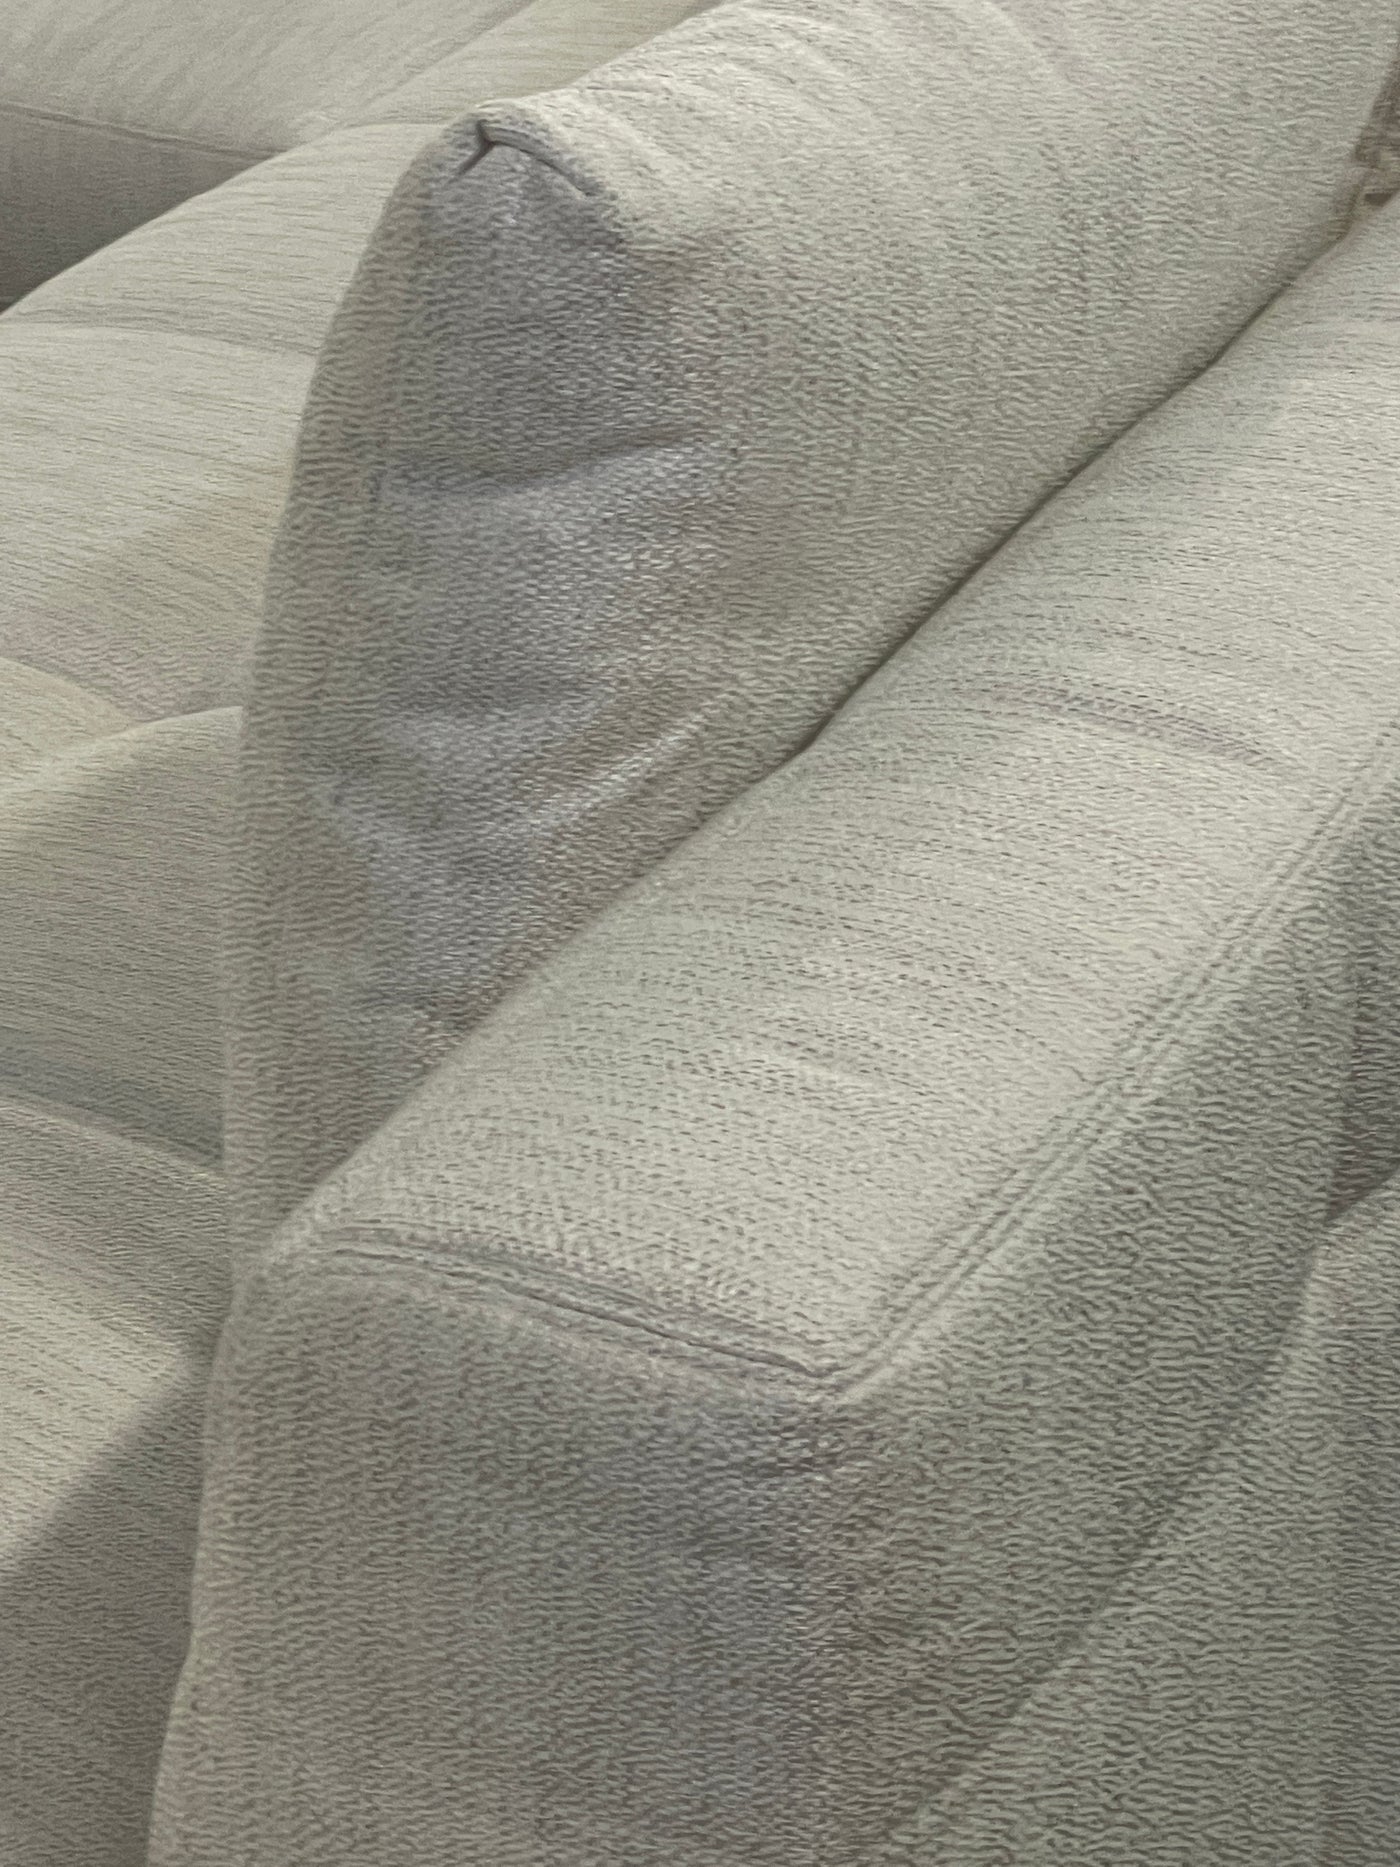 Asolo Sofa - Future Classics Furniture